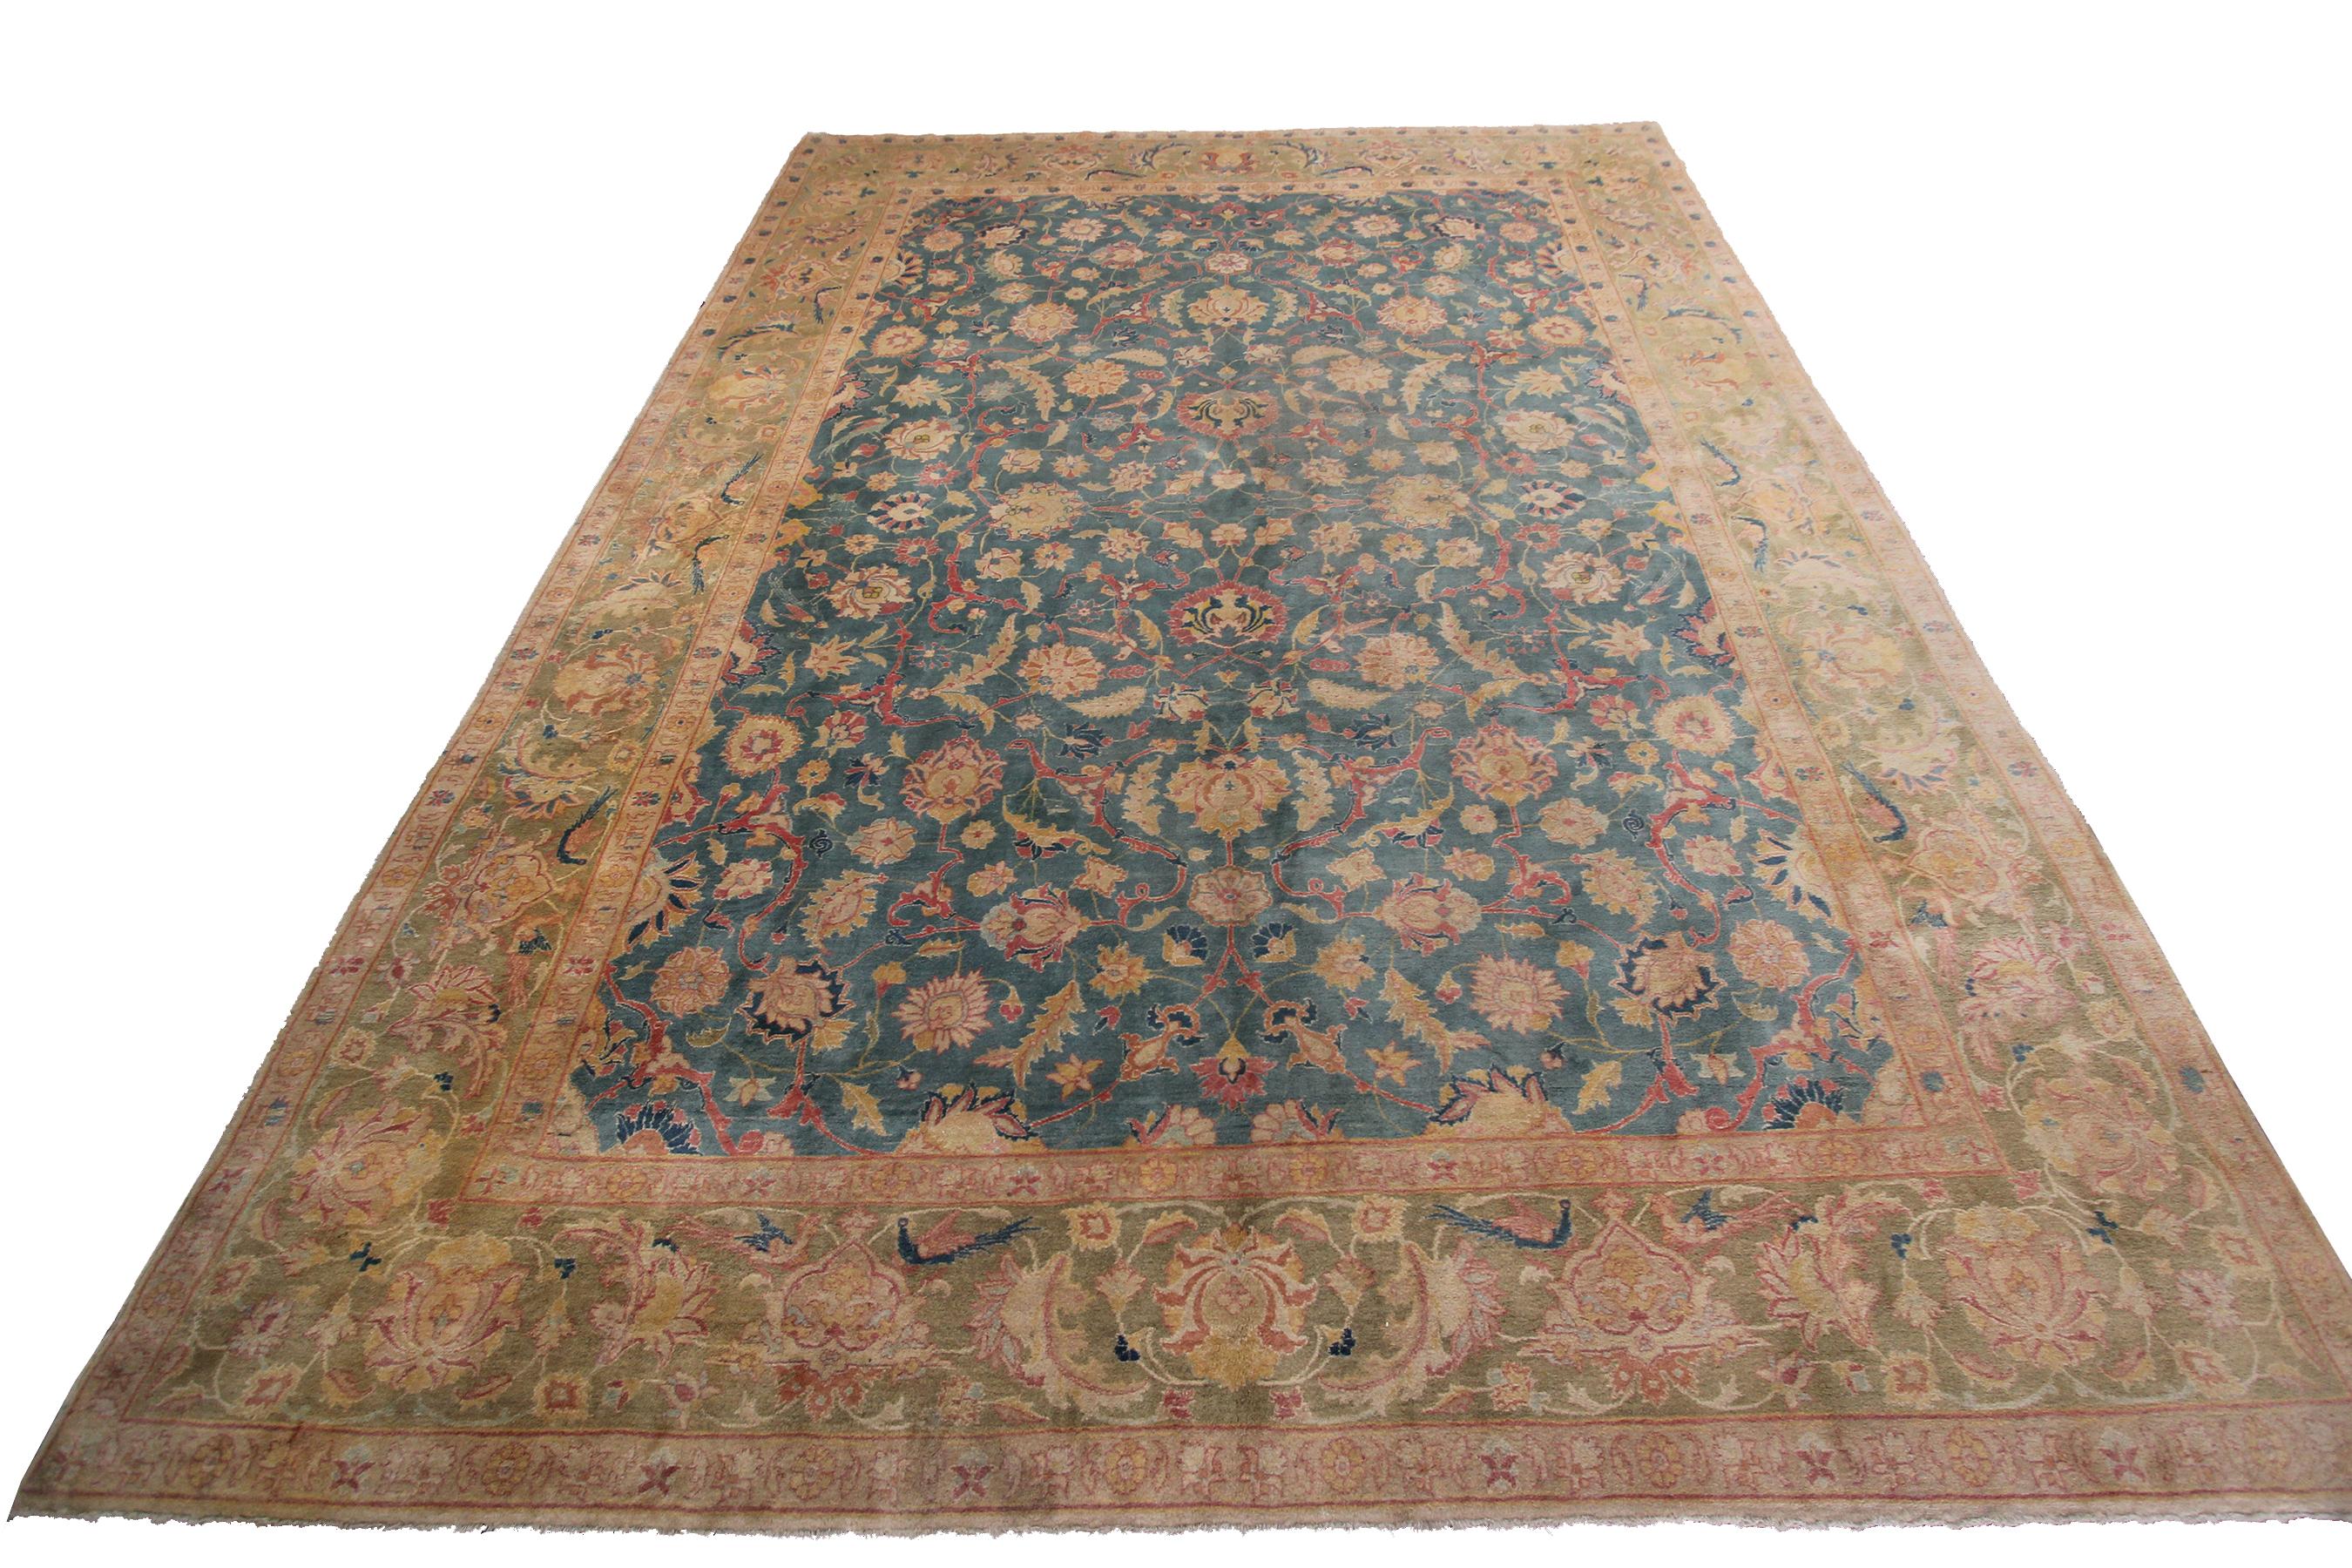 Fantastic rare antique tabrizz rug blue authentic traditional oriental handmade rug rare blue 10' x 13'2